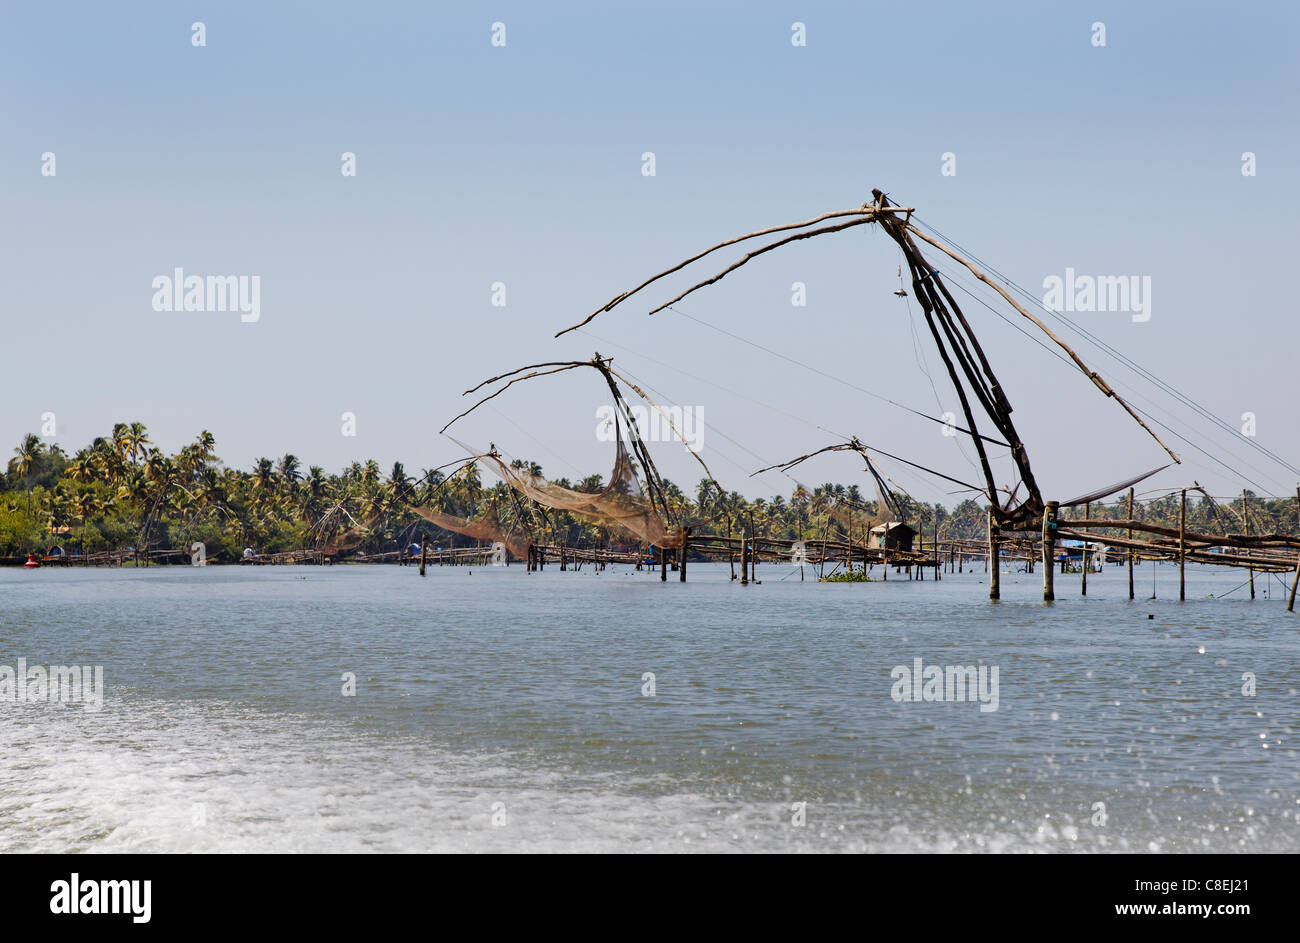 Landschaft Angeln Kerala Backwaters Indien Textur Muster Hintergrund vorbei Schnellboot Kielwasser Sea Spray waschen Textfreiraum Stockfoto